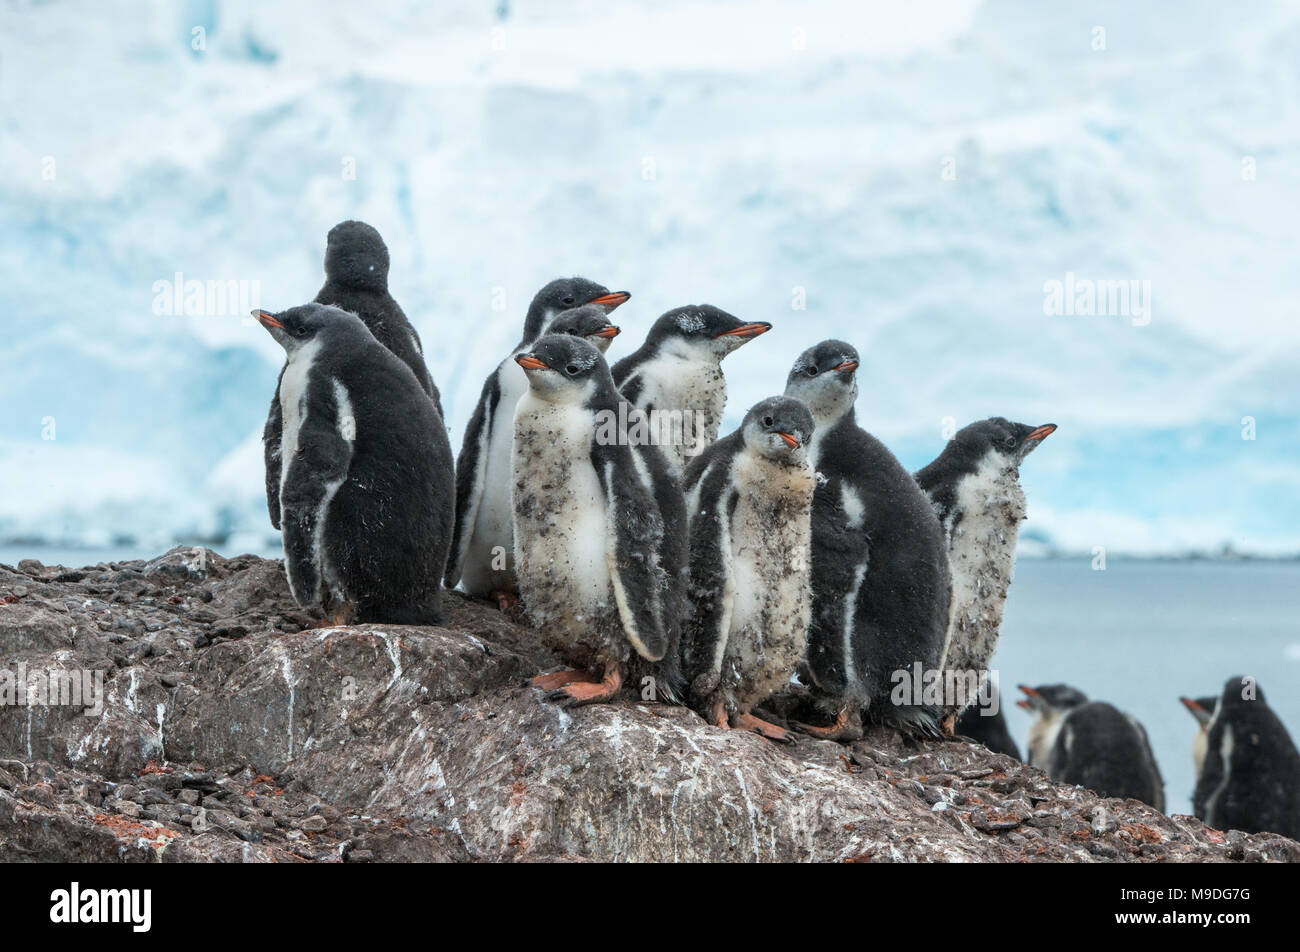 Sicurezza in numeri. Un pinguino Gentoo creche huddles insieme per la sicurezza su un dosso roccioso che in Antartide Foto Stock